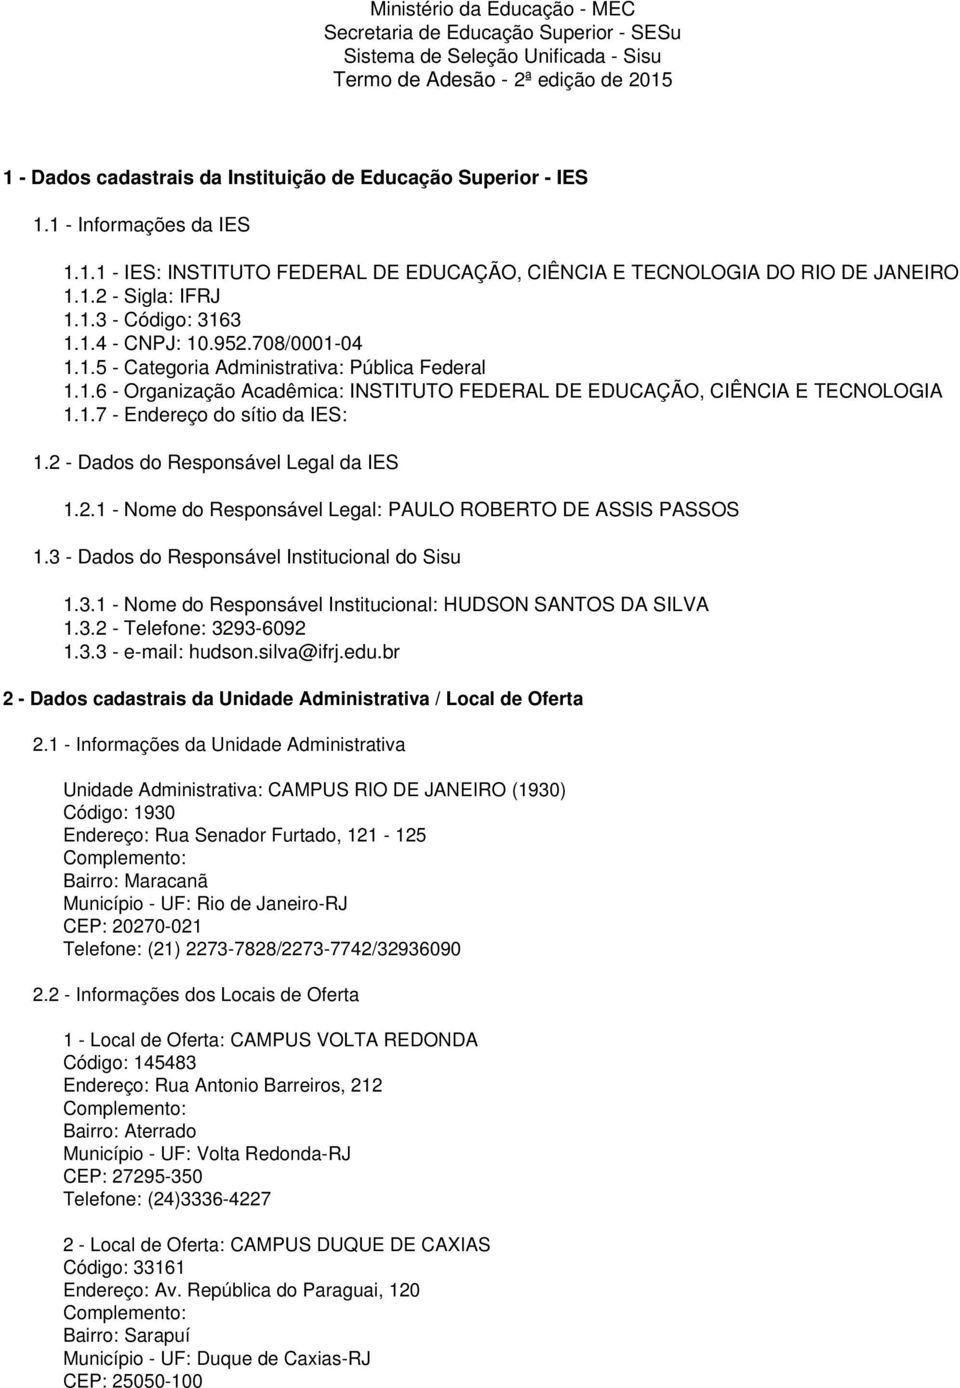 1.6 - Organização Acadêmica: INSTITUTO FEDERAL DE EDUCAÇÃO, CIÊNCIA E TECNOLOGIA 1.1.7 - Endereço do sítio da IES: 1.2 - Dados do Responsável Legal da IES 1.2.1 - Nome do Responsável Legal: PAULO ROBERTO DE ASSIS PASSOS 1.